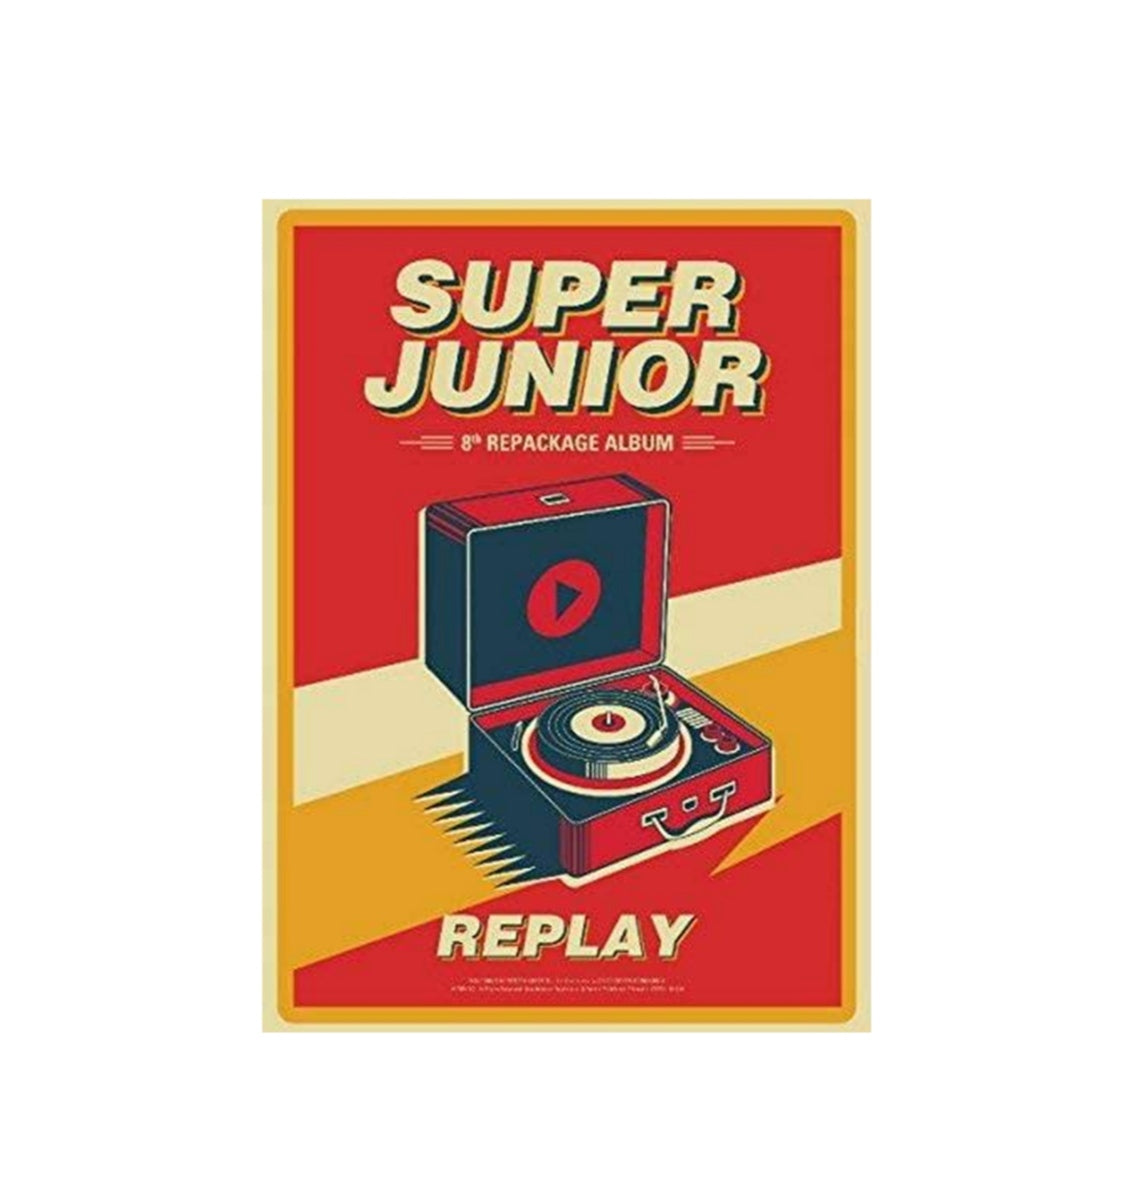 Super Junior - Replay Album Vol. 8 Repackage